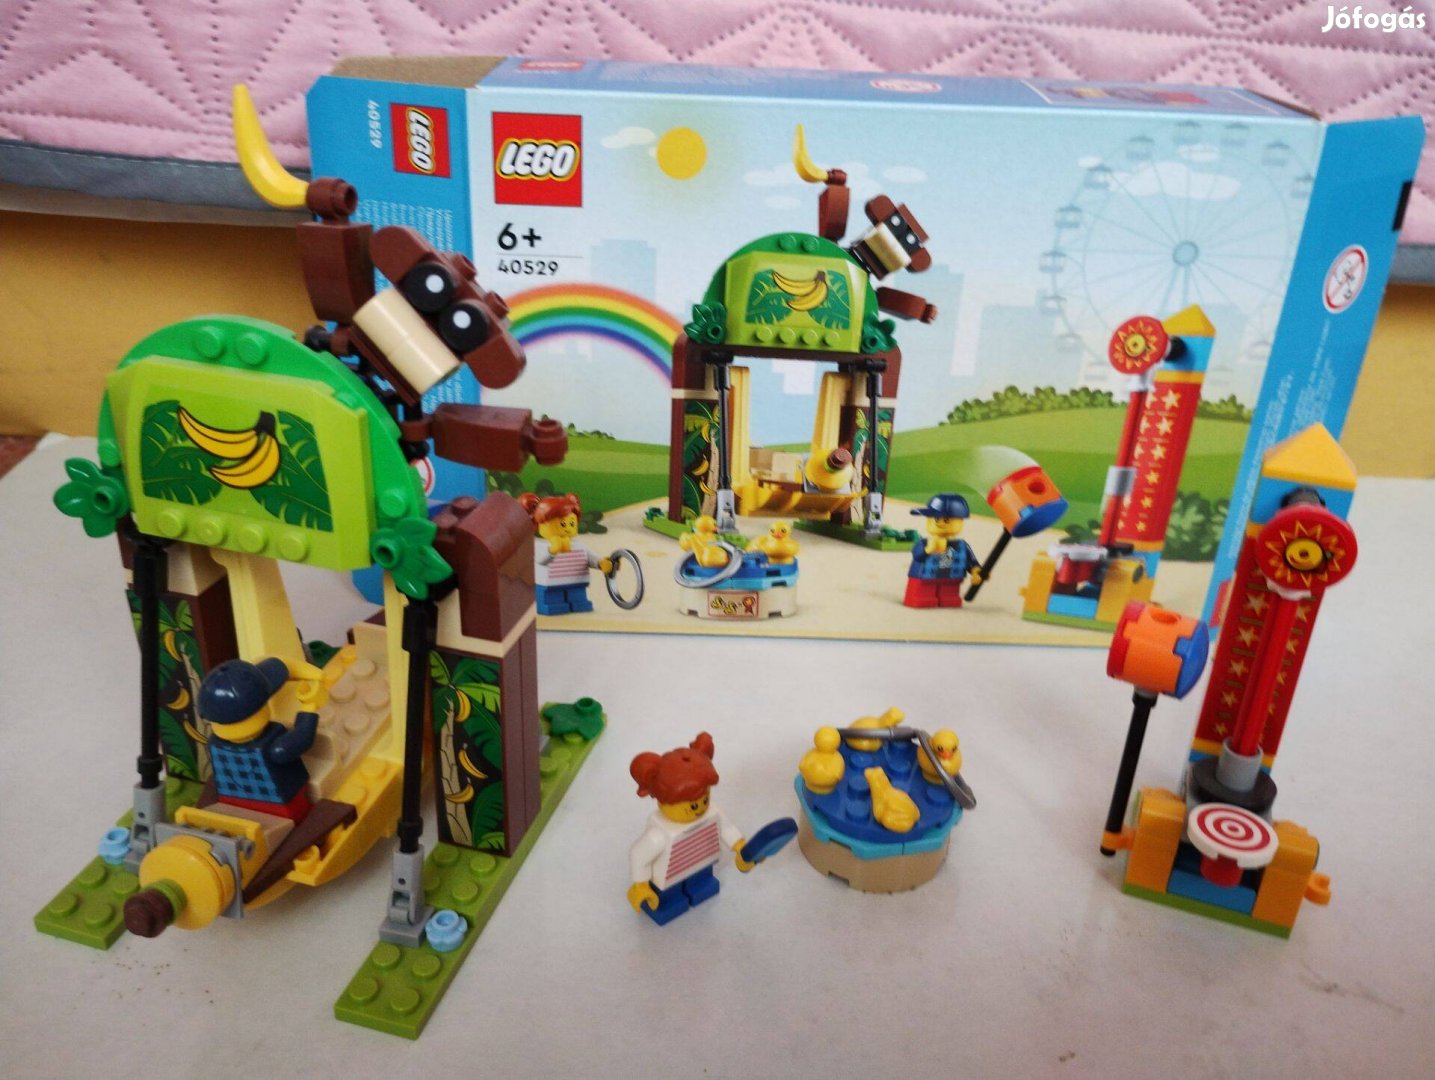 Lego 40529 készlet